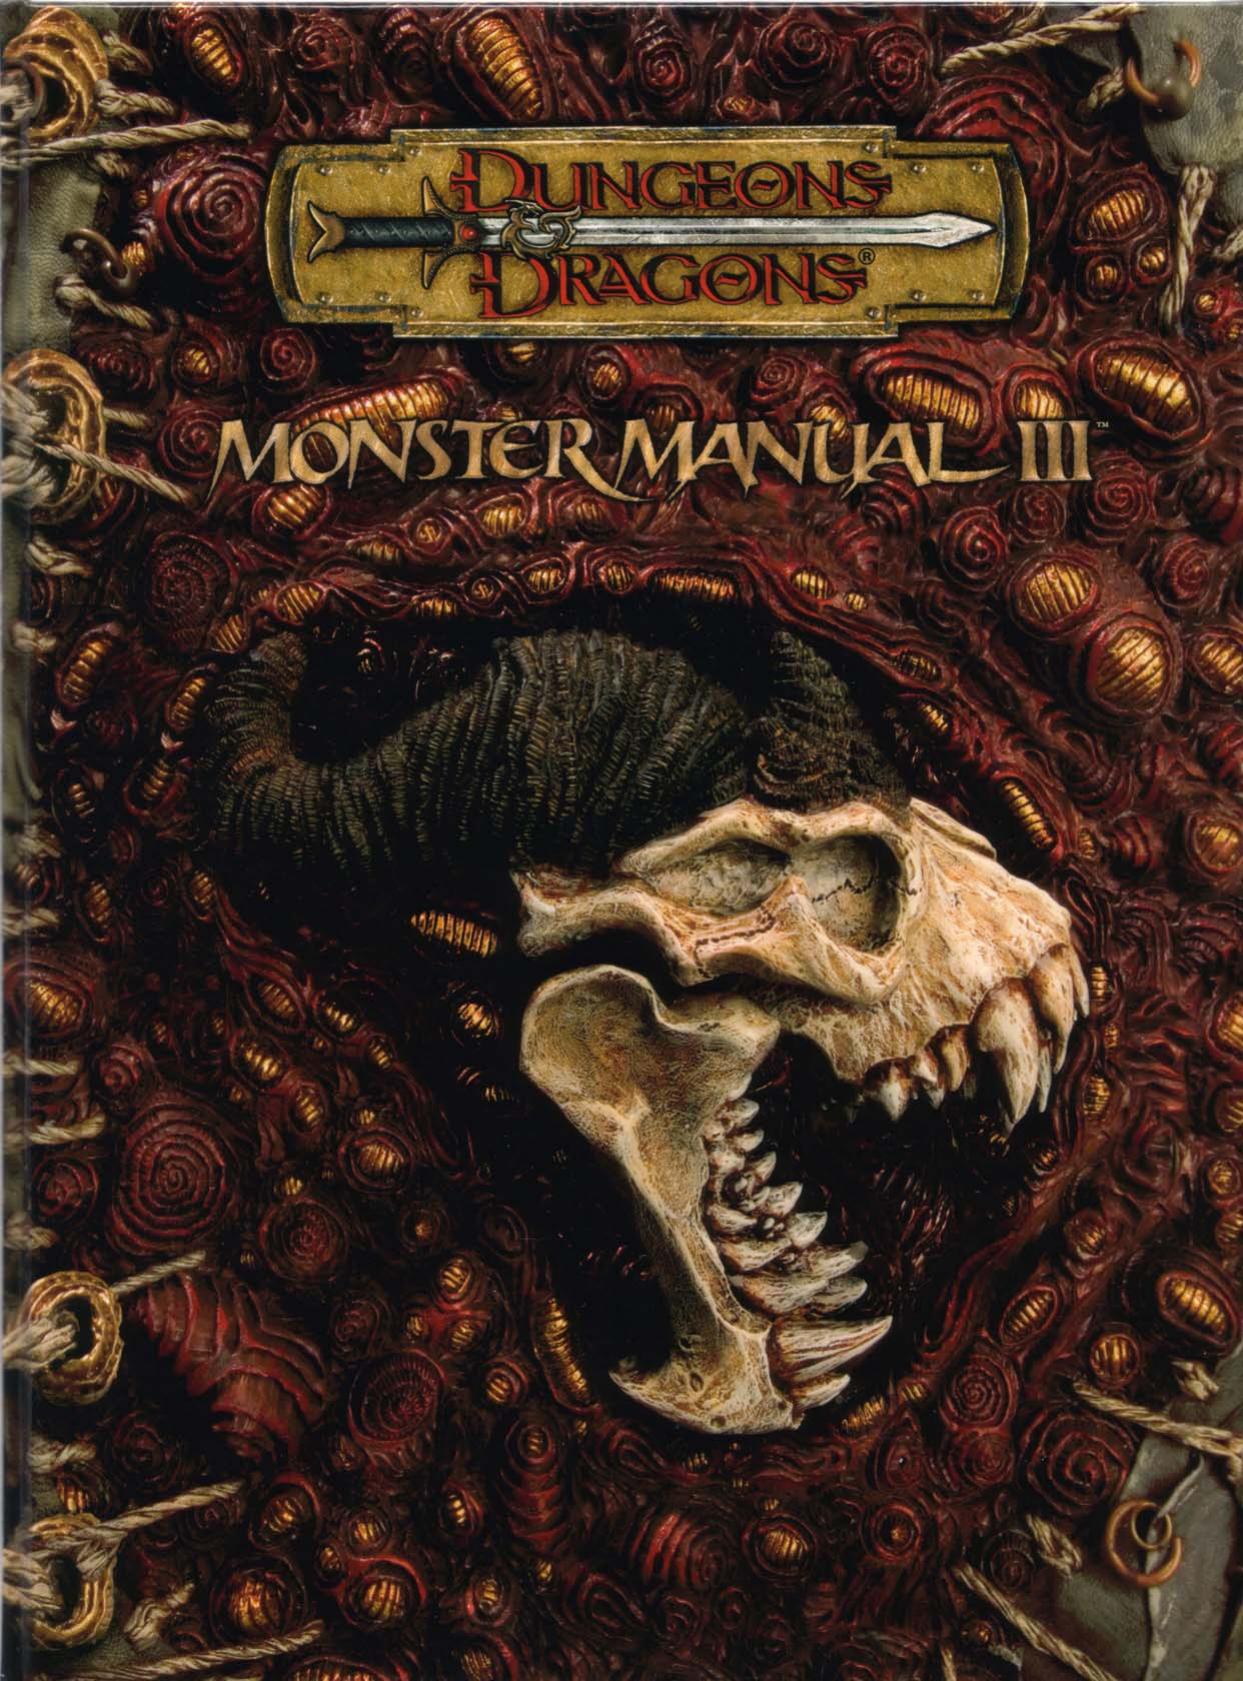 Monster Manual III